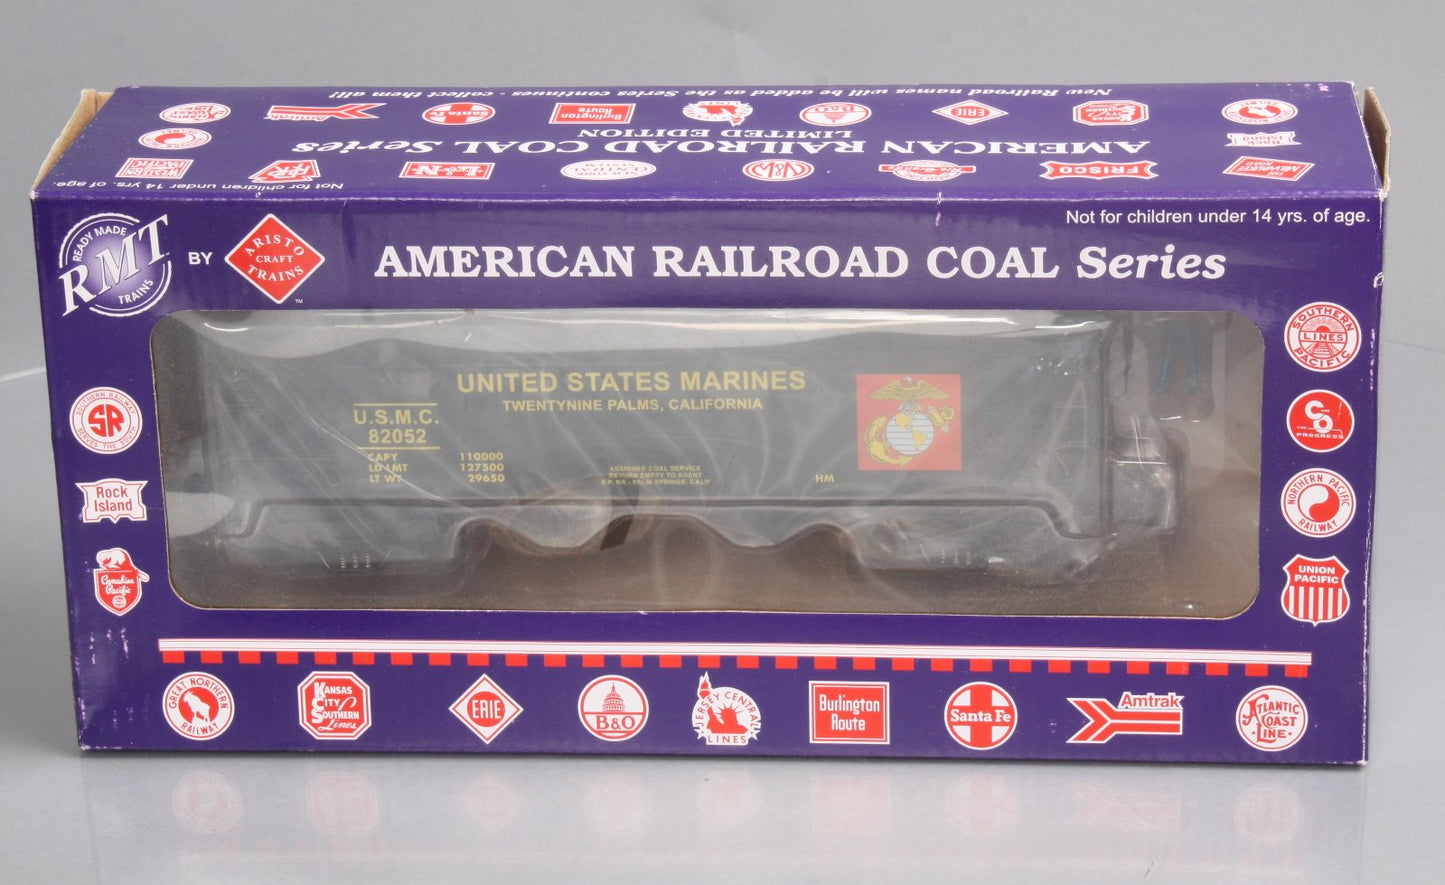 RMT 96263-2 US Marines 2-Bay Coal Hopper Set w/Coal Load LN/Box